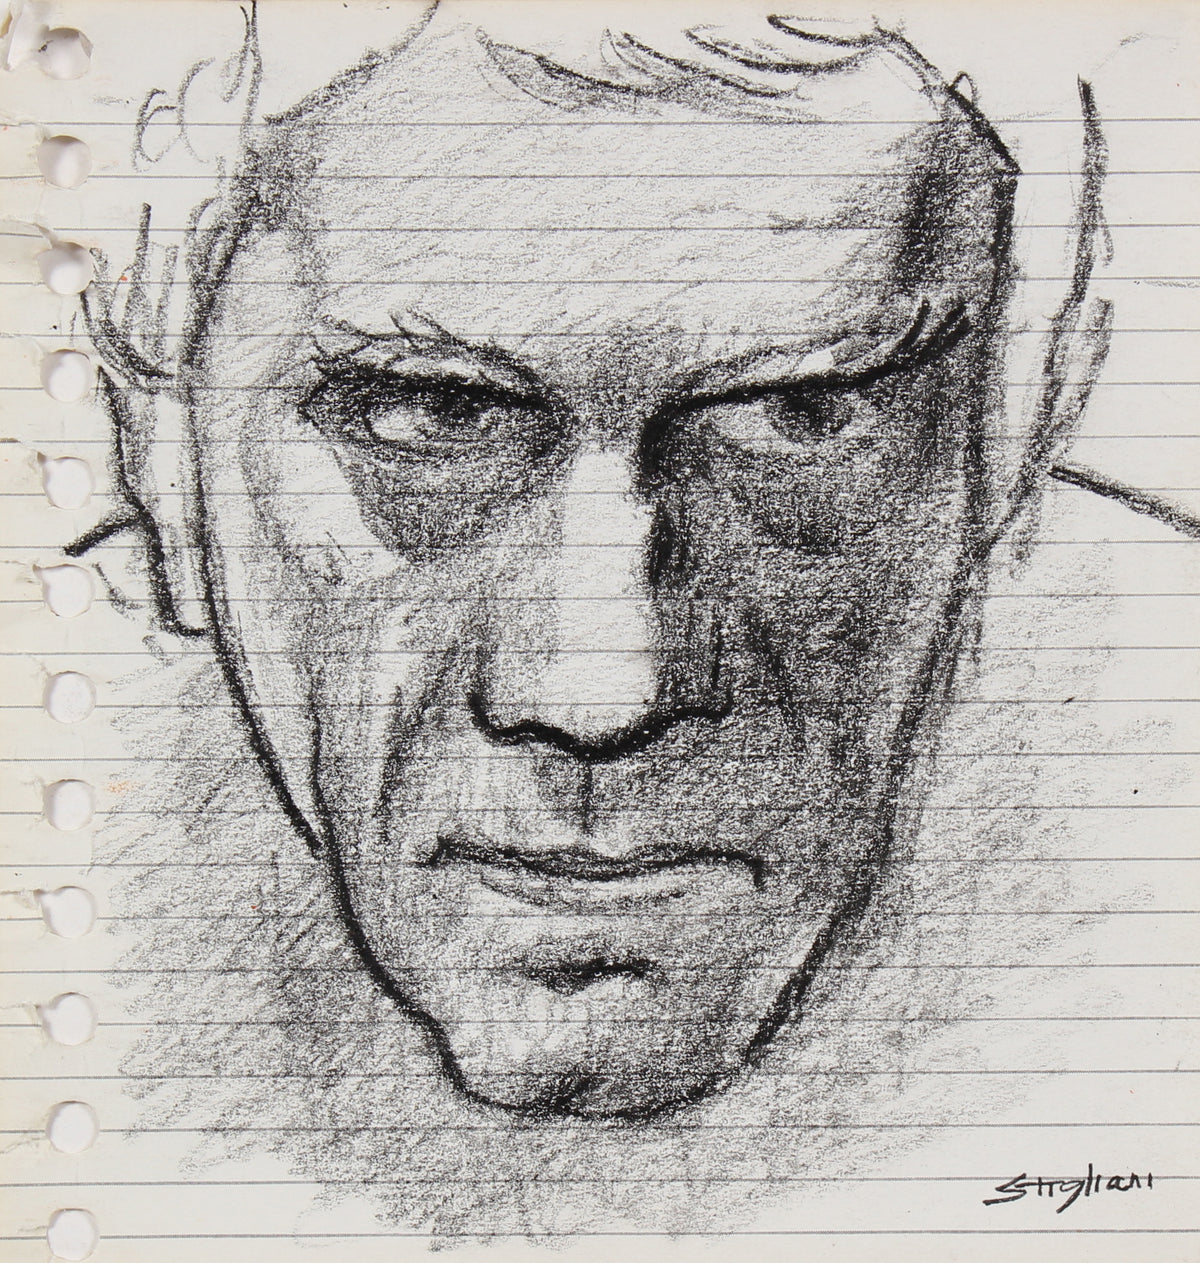 &lt;I&gt;Self Portrait&lt;/I&gt; &lt;br&gt;20th Century Wax Crayon on Paper&lt;br&gt;&lt;br&gt;#90676